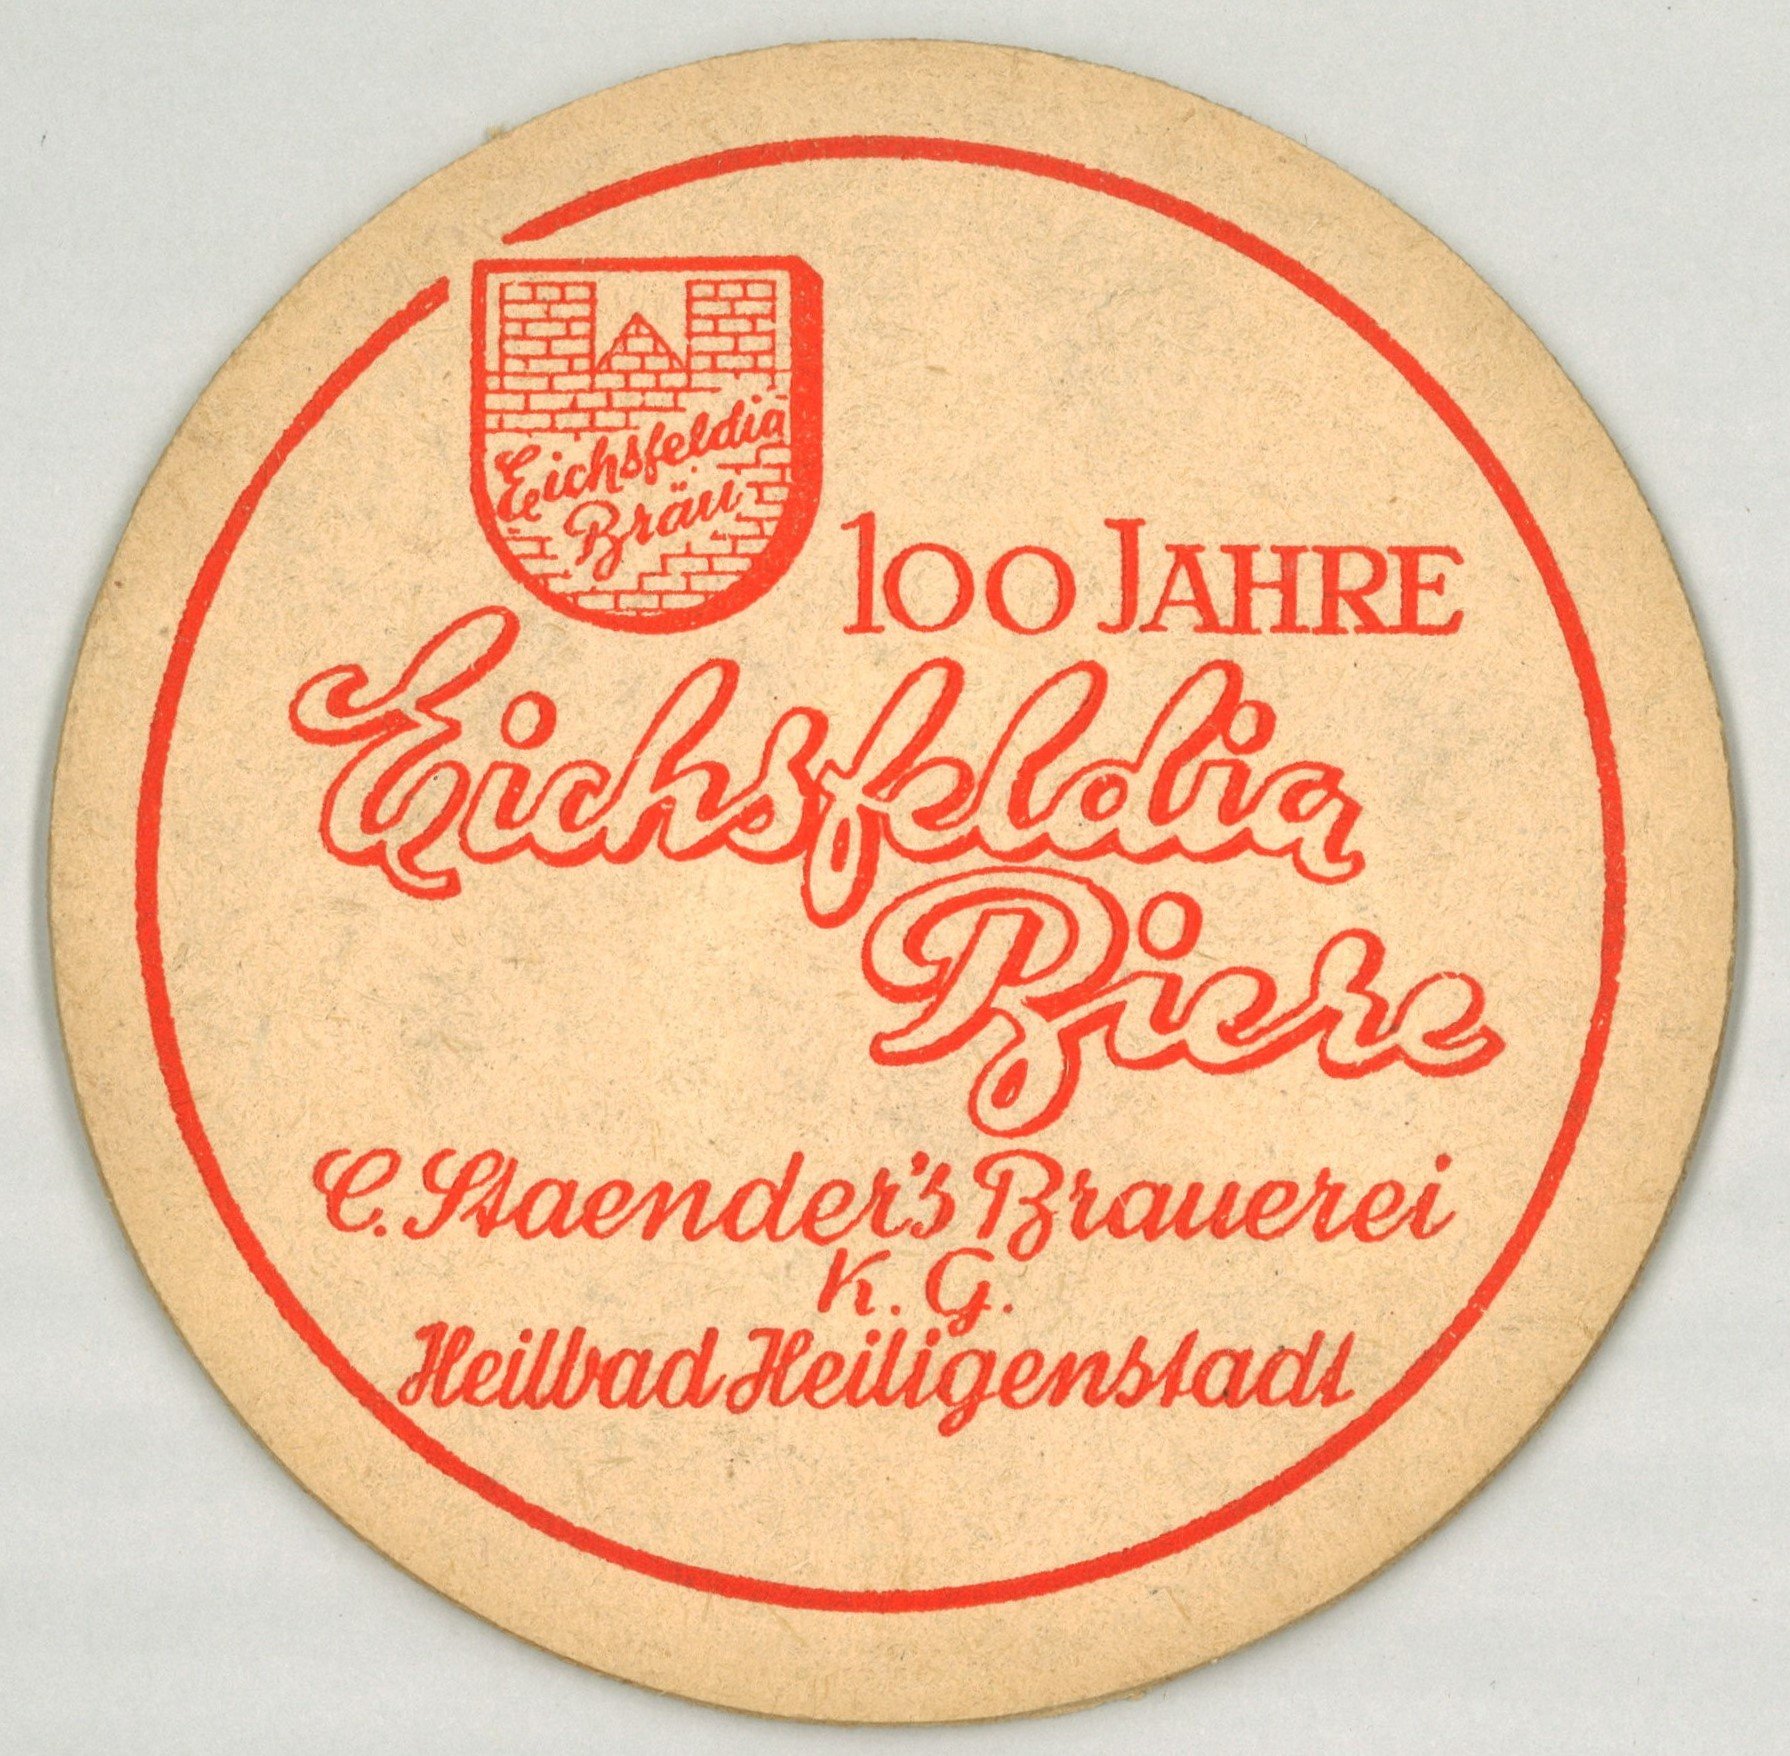 Heiligenstadt: C. Staender's Brauerei K.G. (Landesgeschichtliche Vereinigung für die Mark Brandenburg e.V., Archiv CC BY)